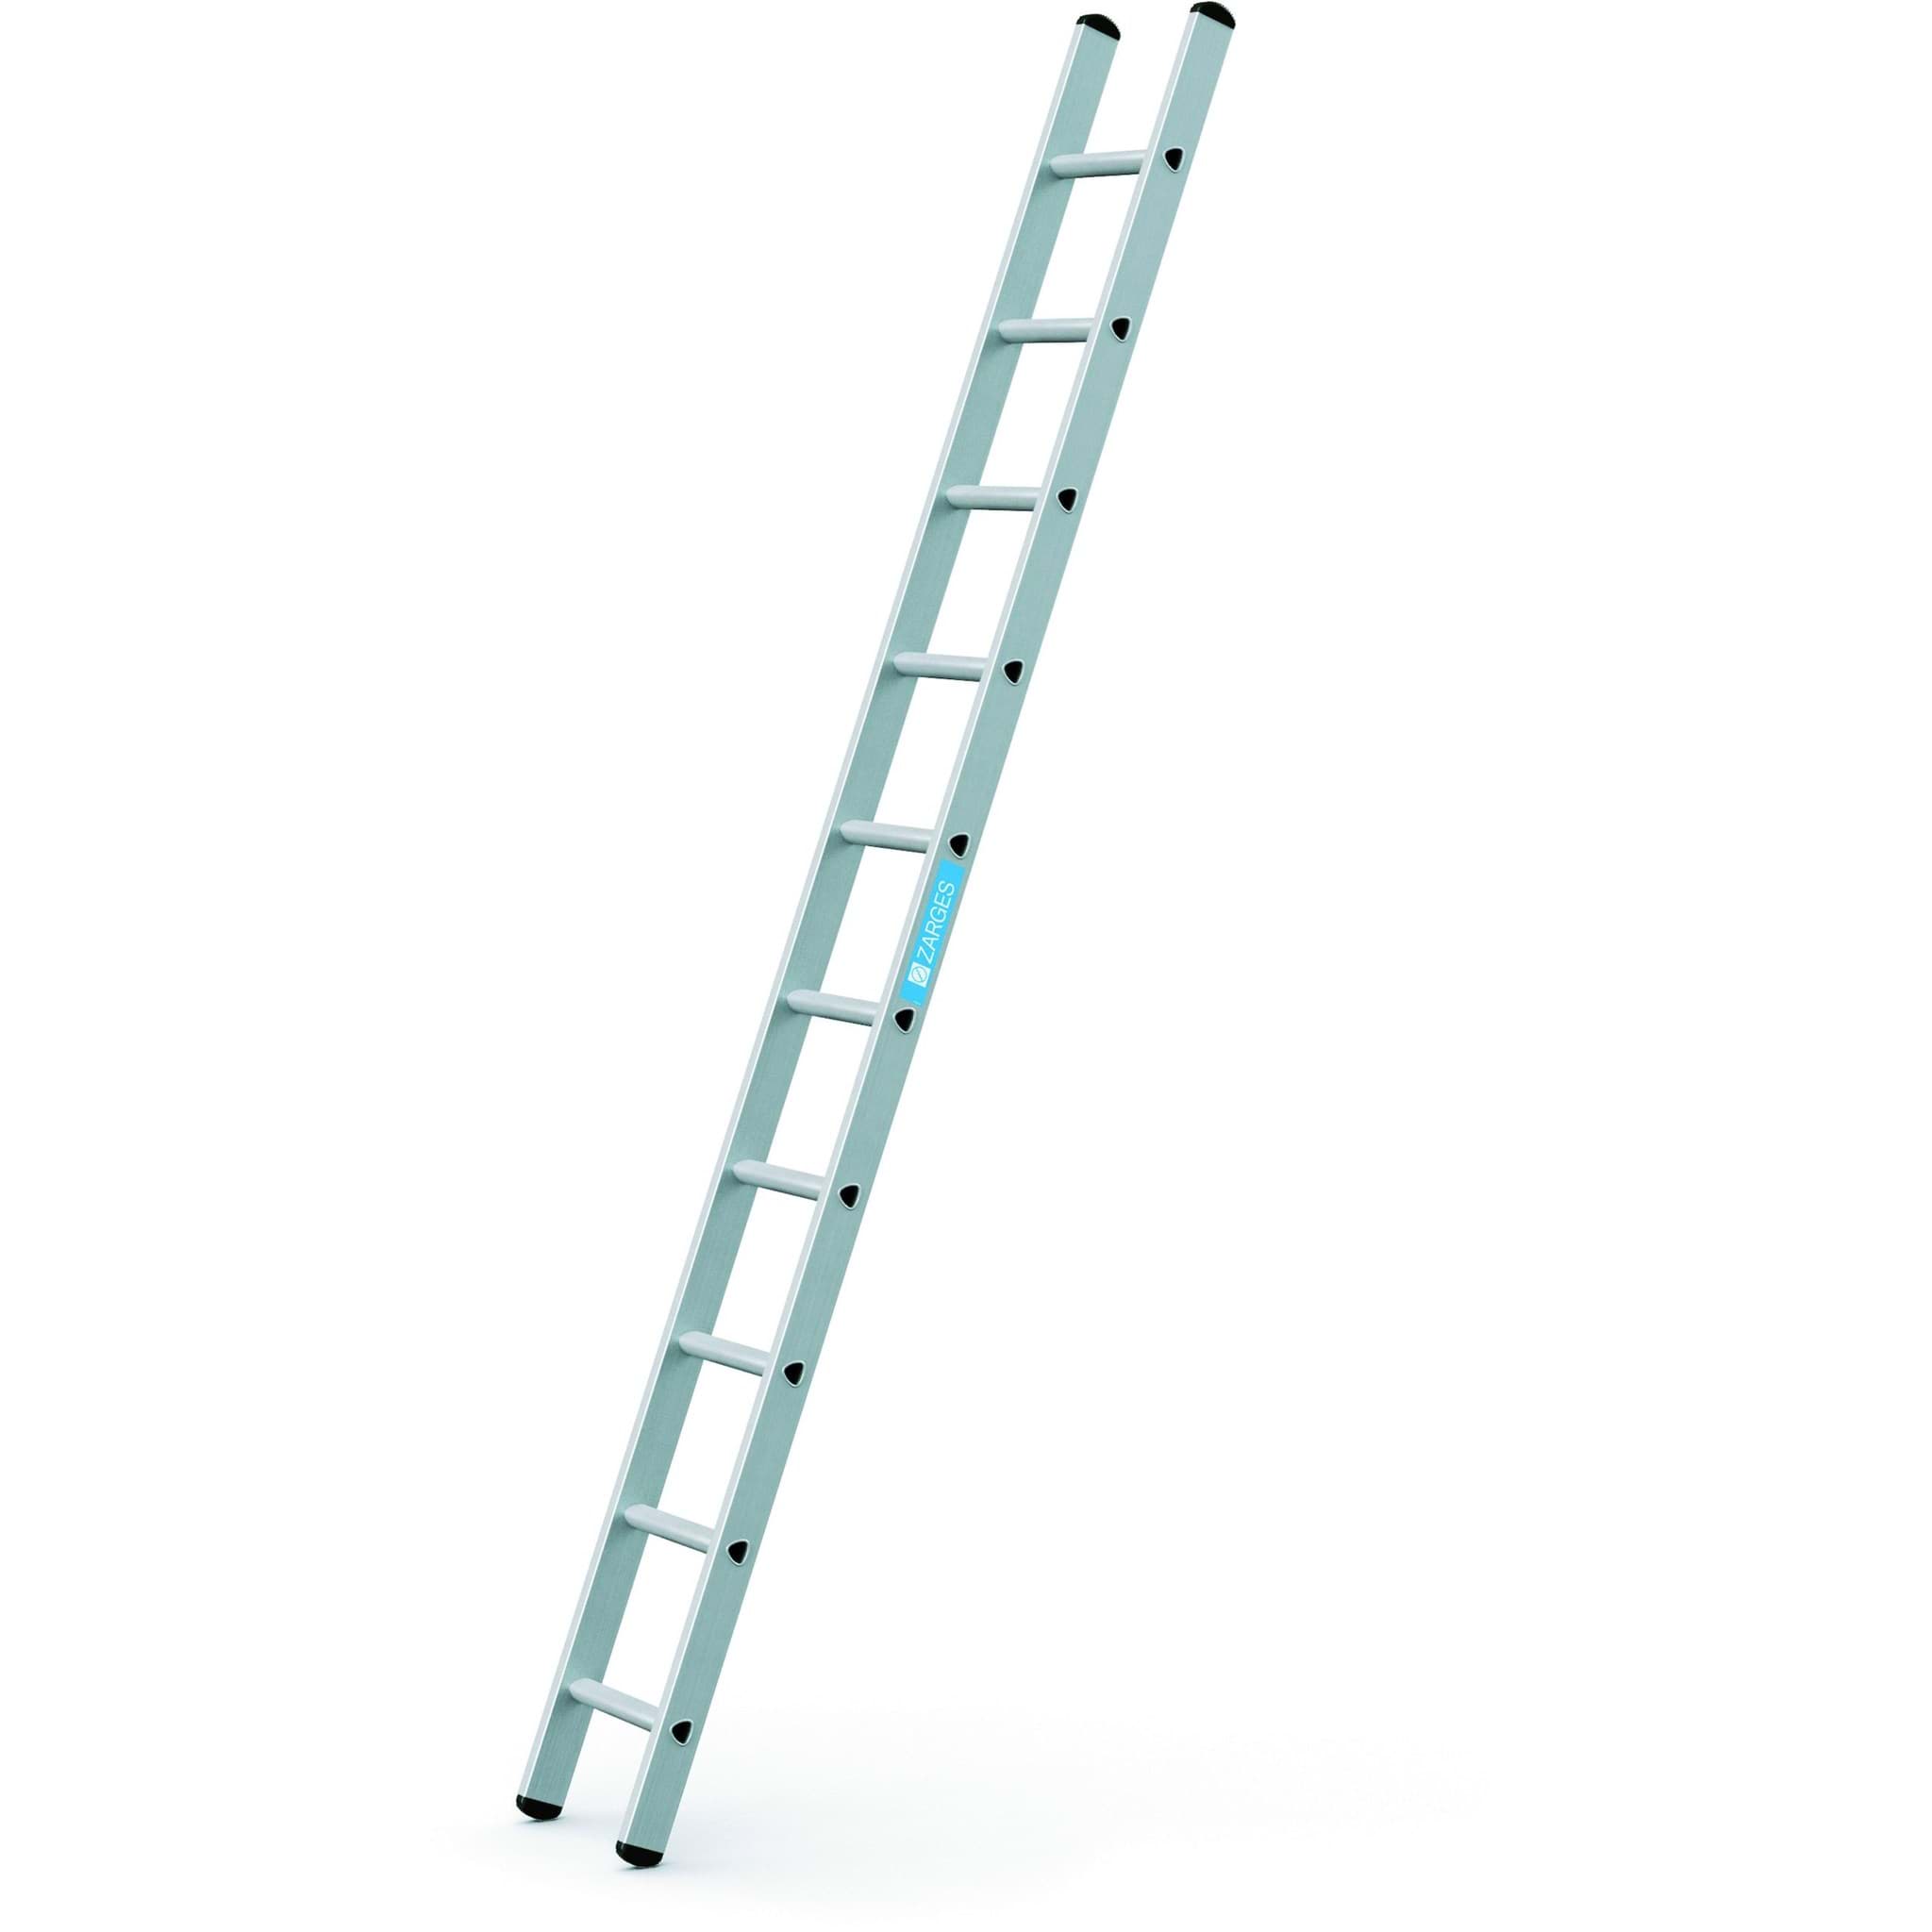 Imagen de Anlegeleiter Strato DL Anlegeleiter 10 Sprossen Leiterlänge 2,98 m Arbeitshöhe 3,85 m